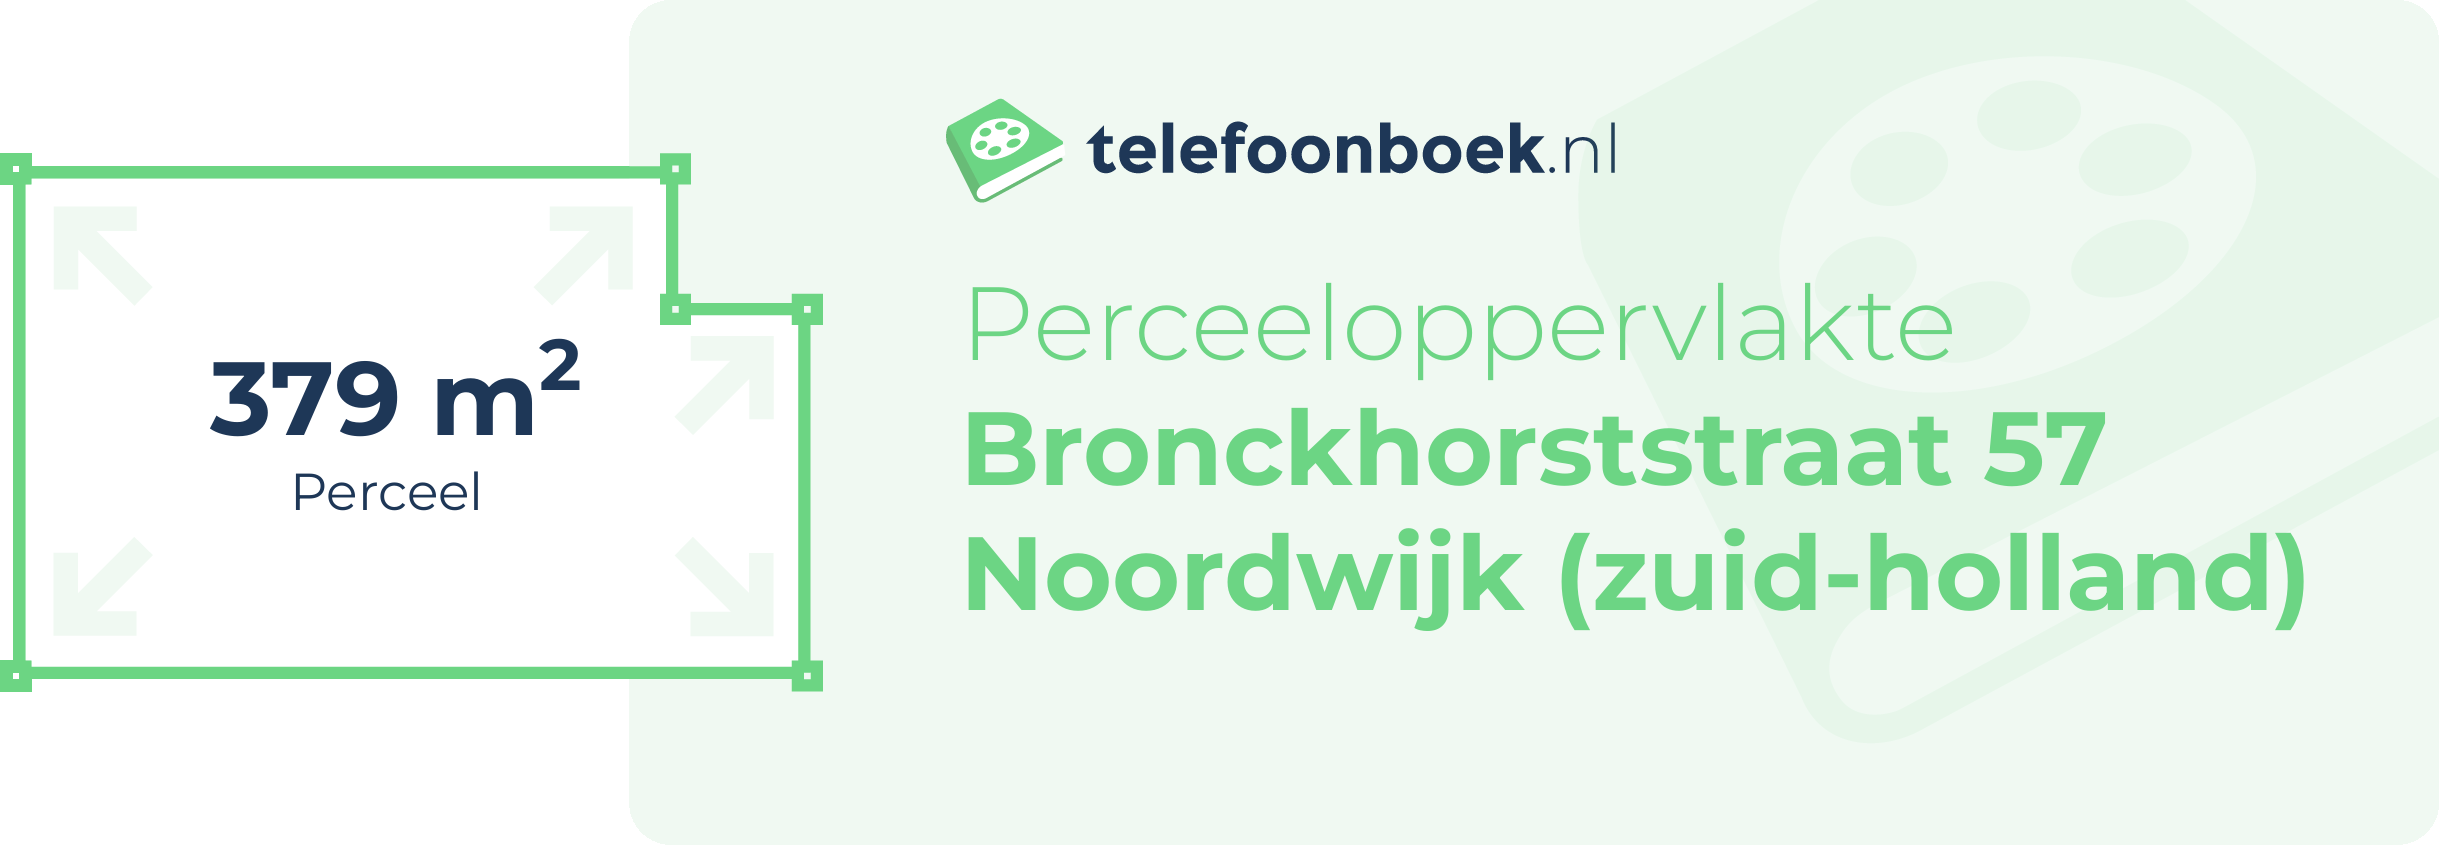 Perceeloppervlakte Bronckhorststraat 57 Noordwijk (Zuid-Holland)